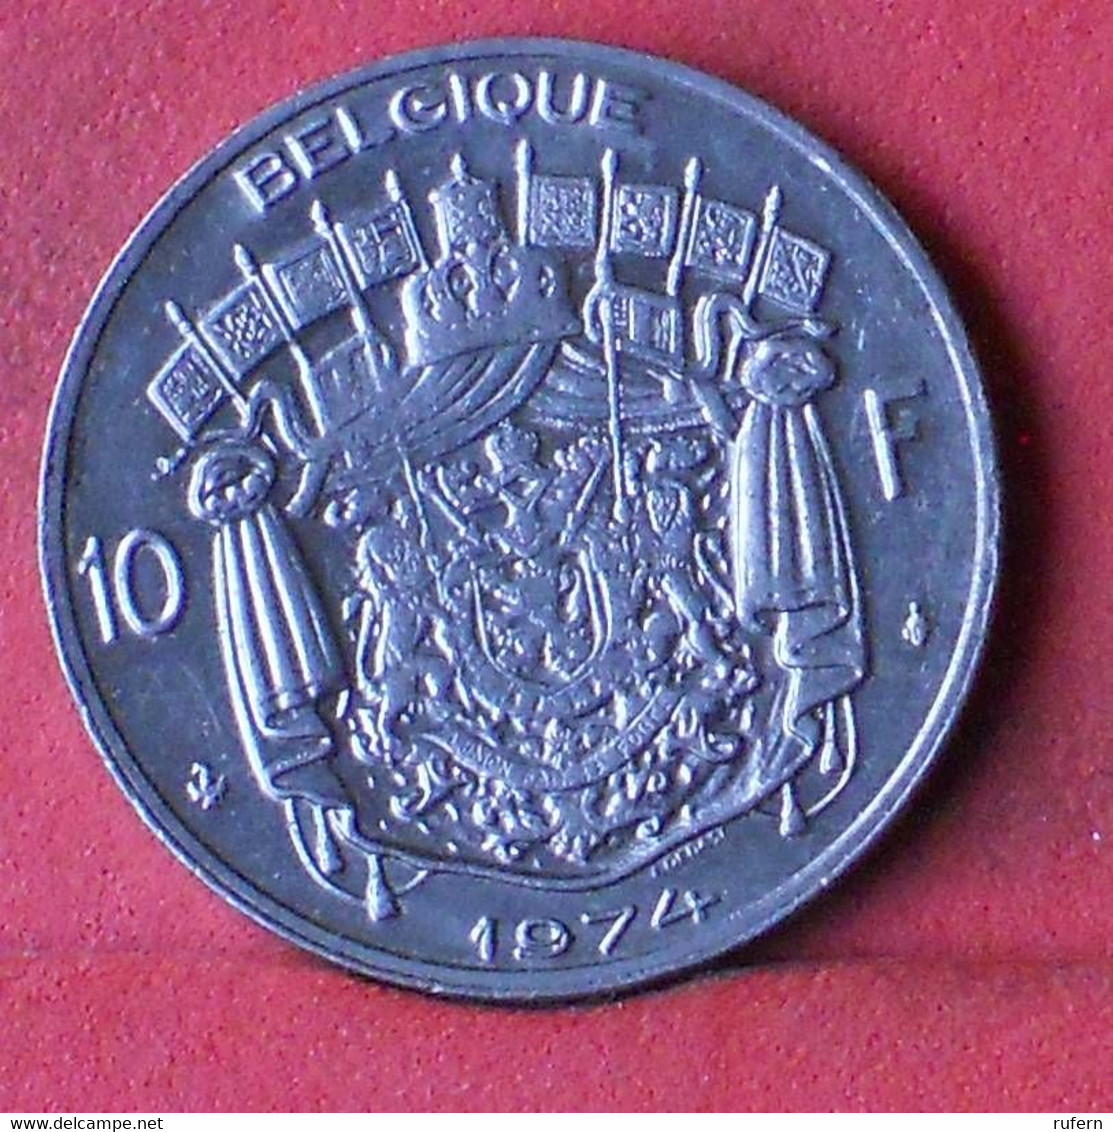 BELGIUM 10 FRANCS 1974 -    KM# 155,1 - (Nº39054) - 10 Francs